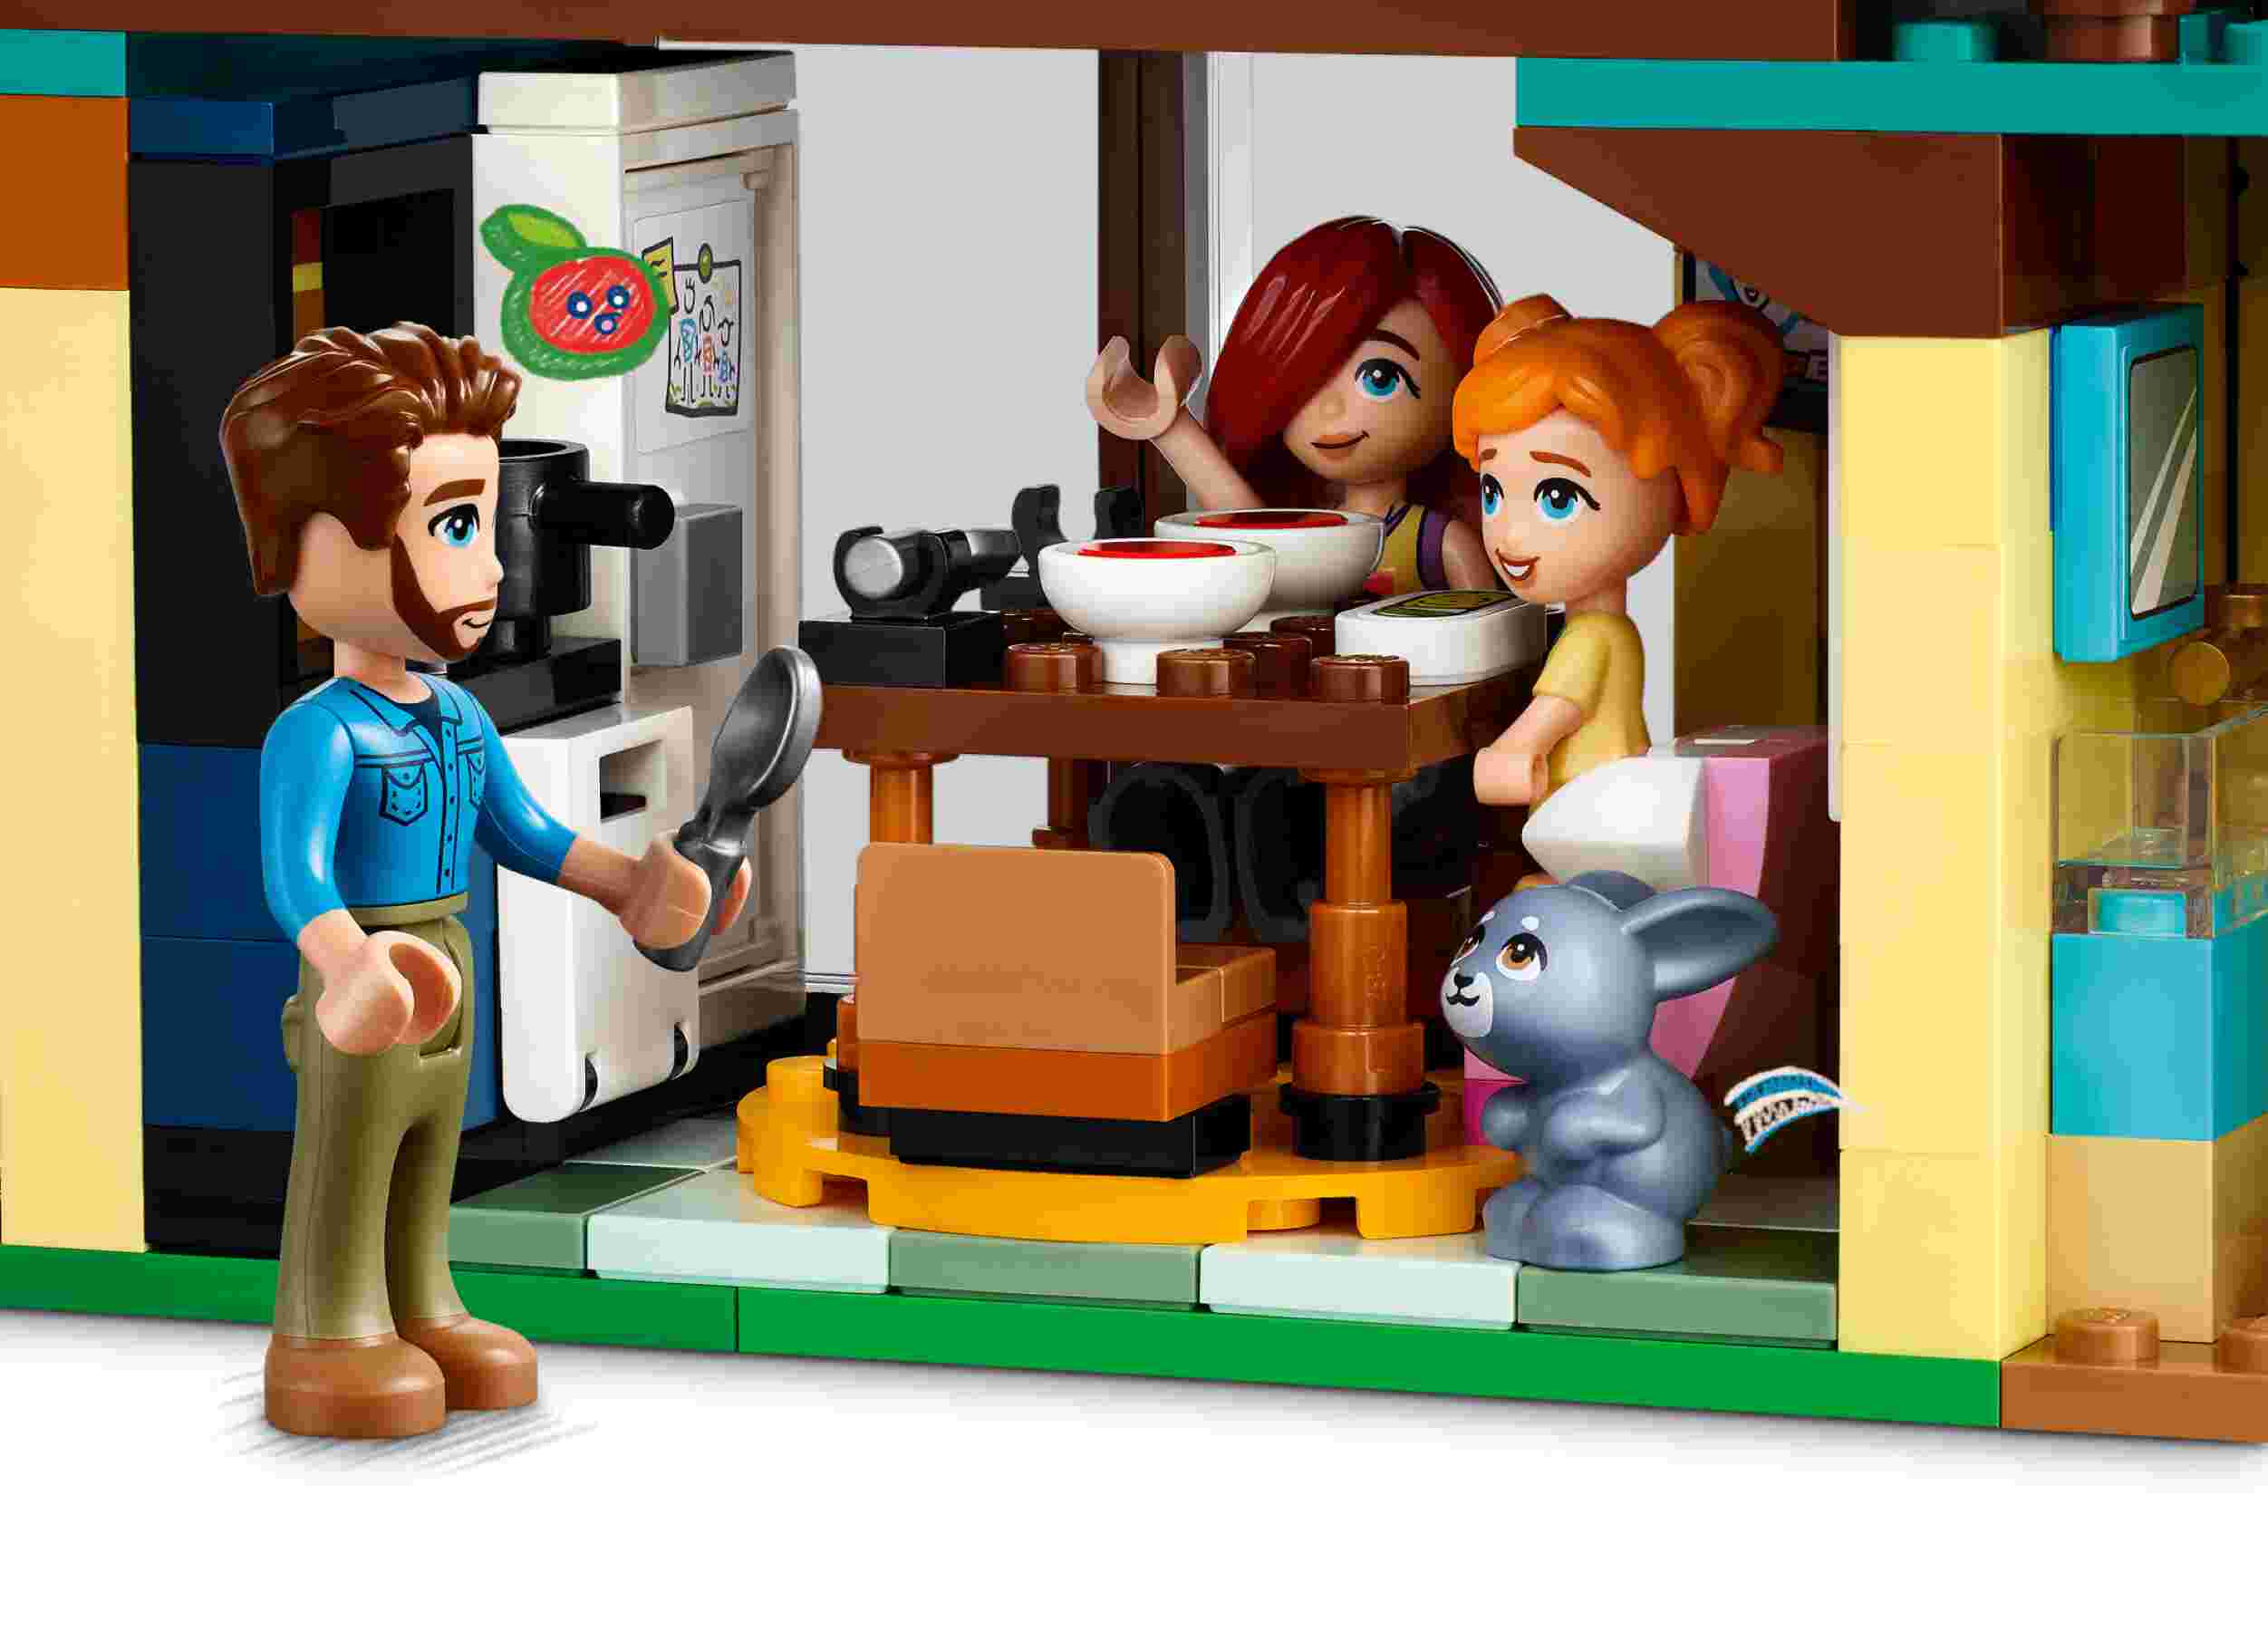 LEGO 42620 Friends Ollys und Paisleys Familien Haus, 2 Häuser und ein Baumhaus